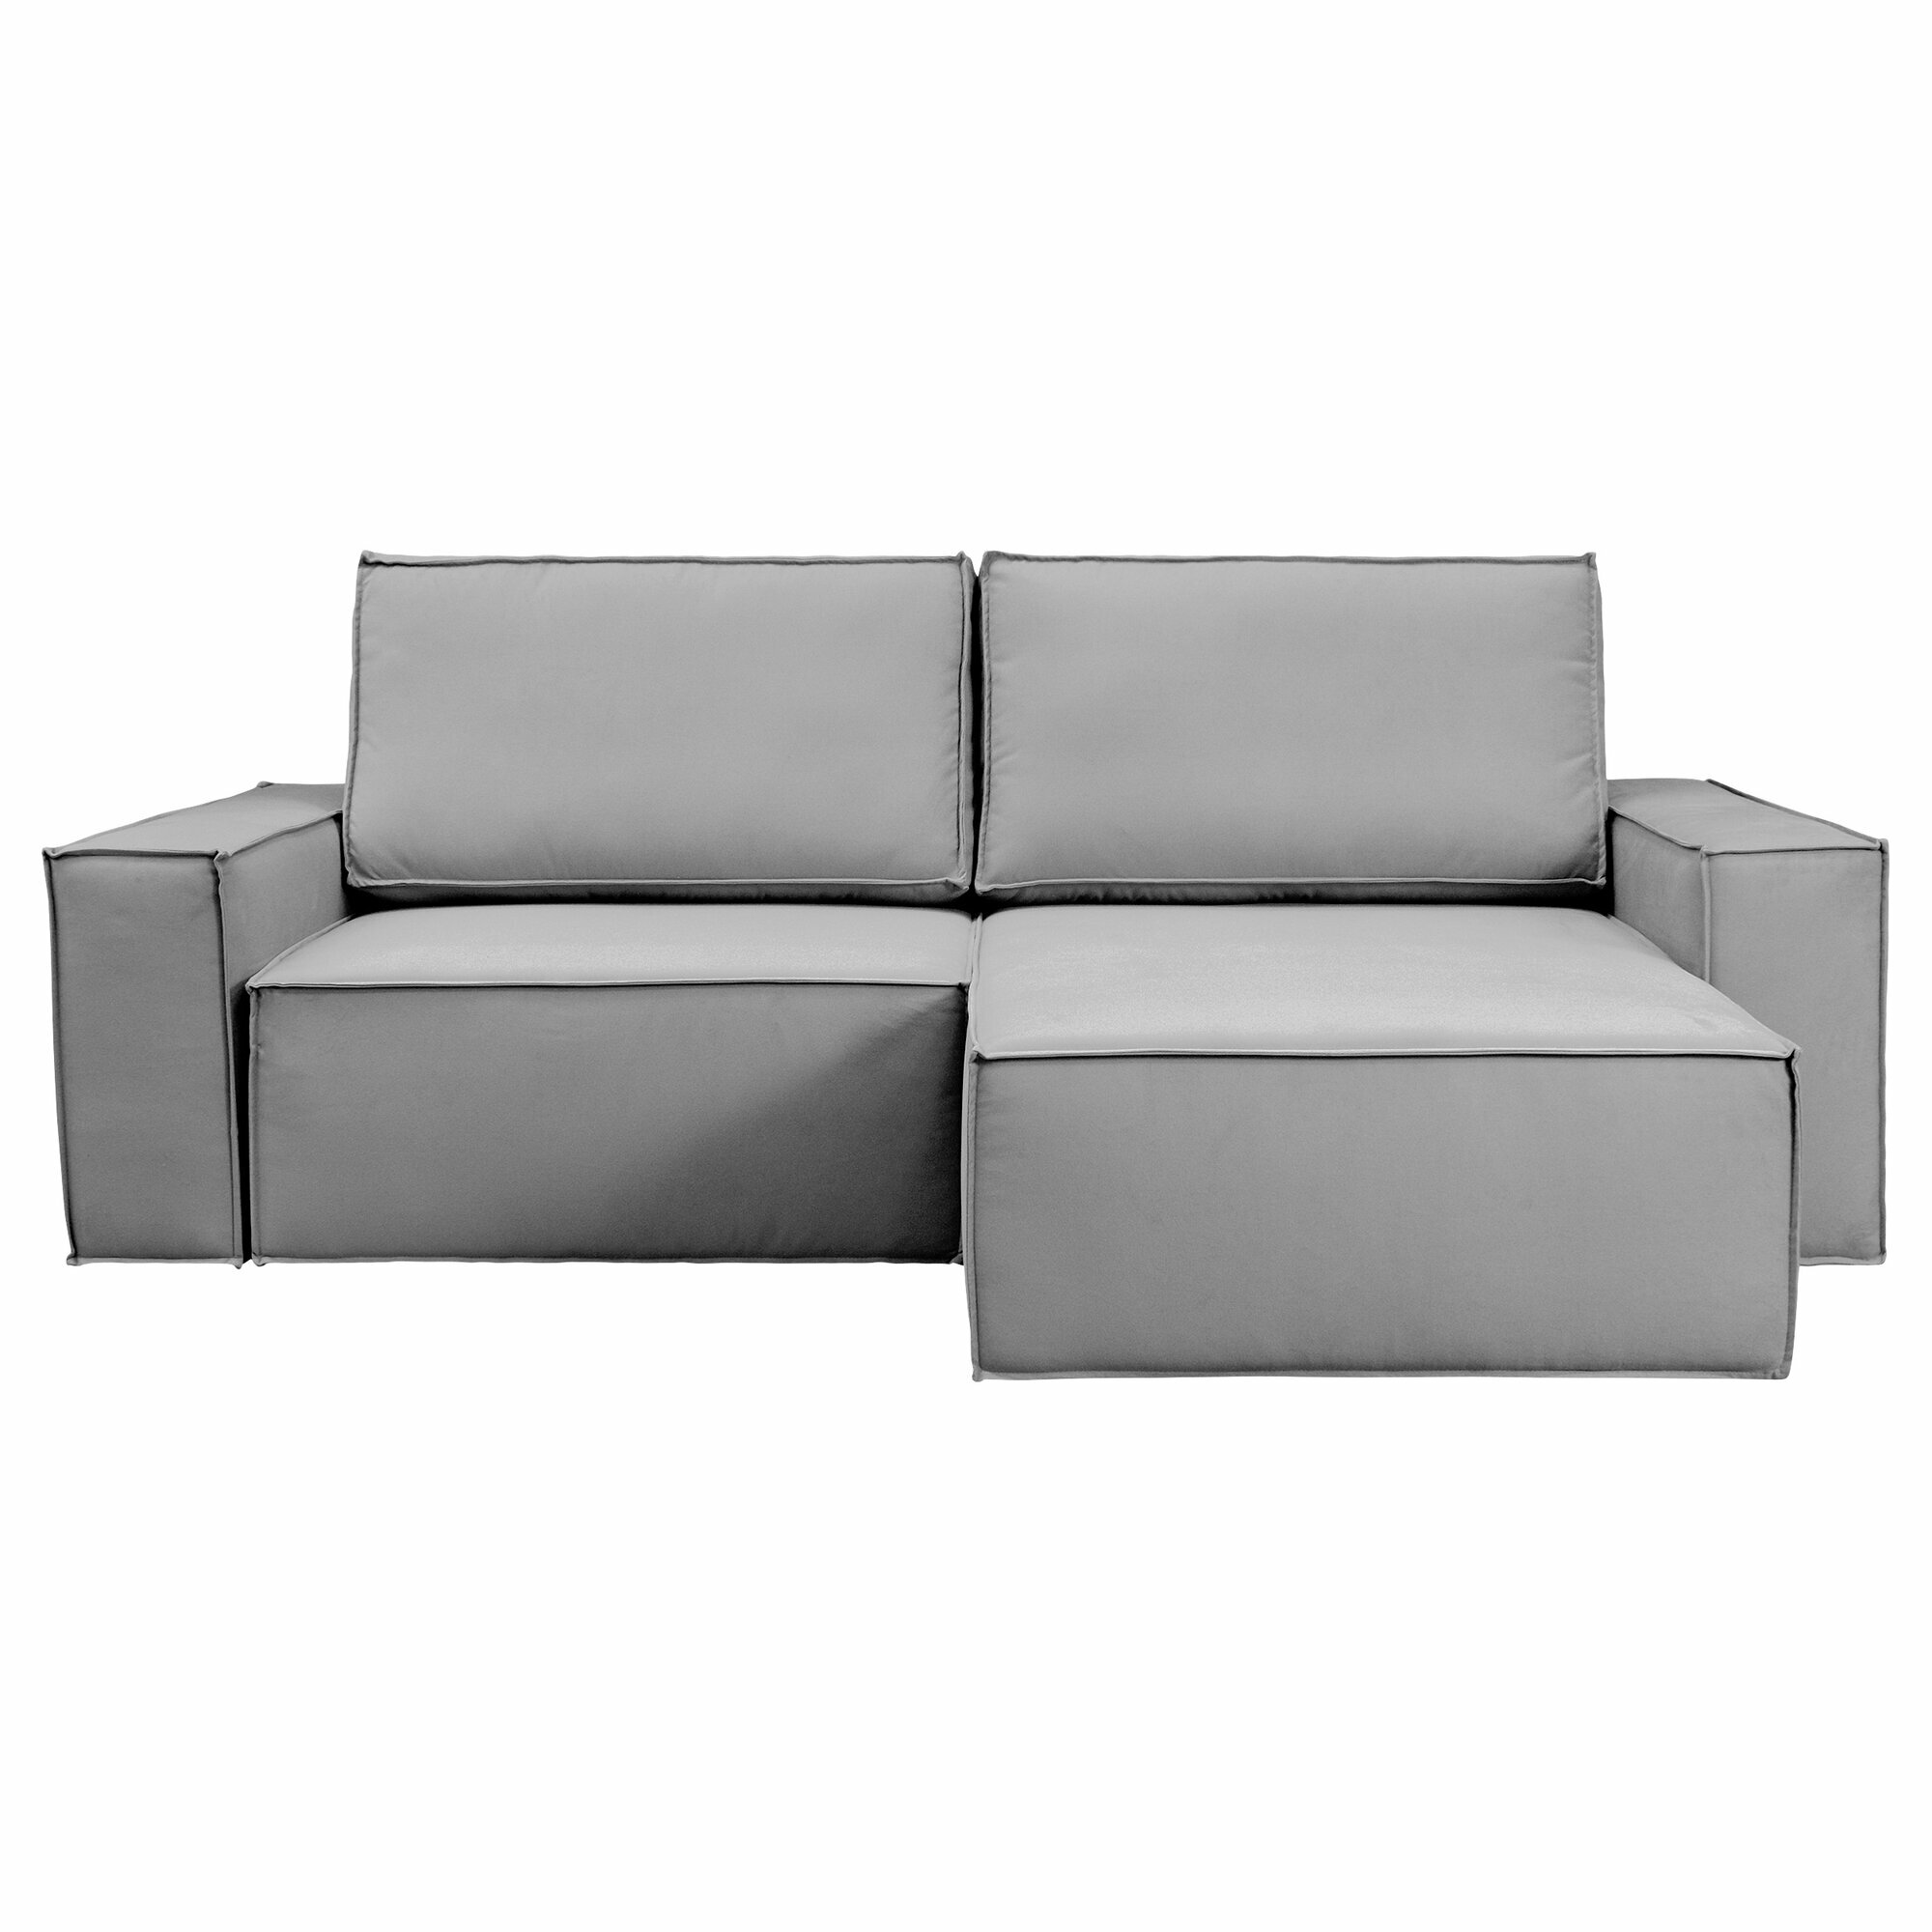 Угловой диван-кровать Forrest Конер светло-серый, правый угол, Еврокнижка, 250х155х65 см